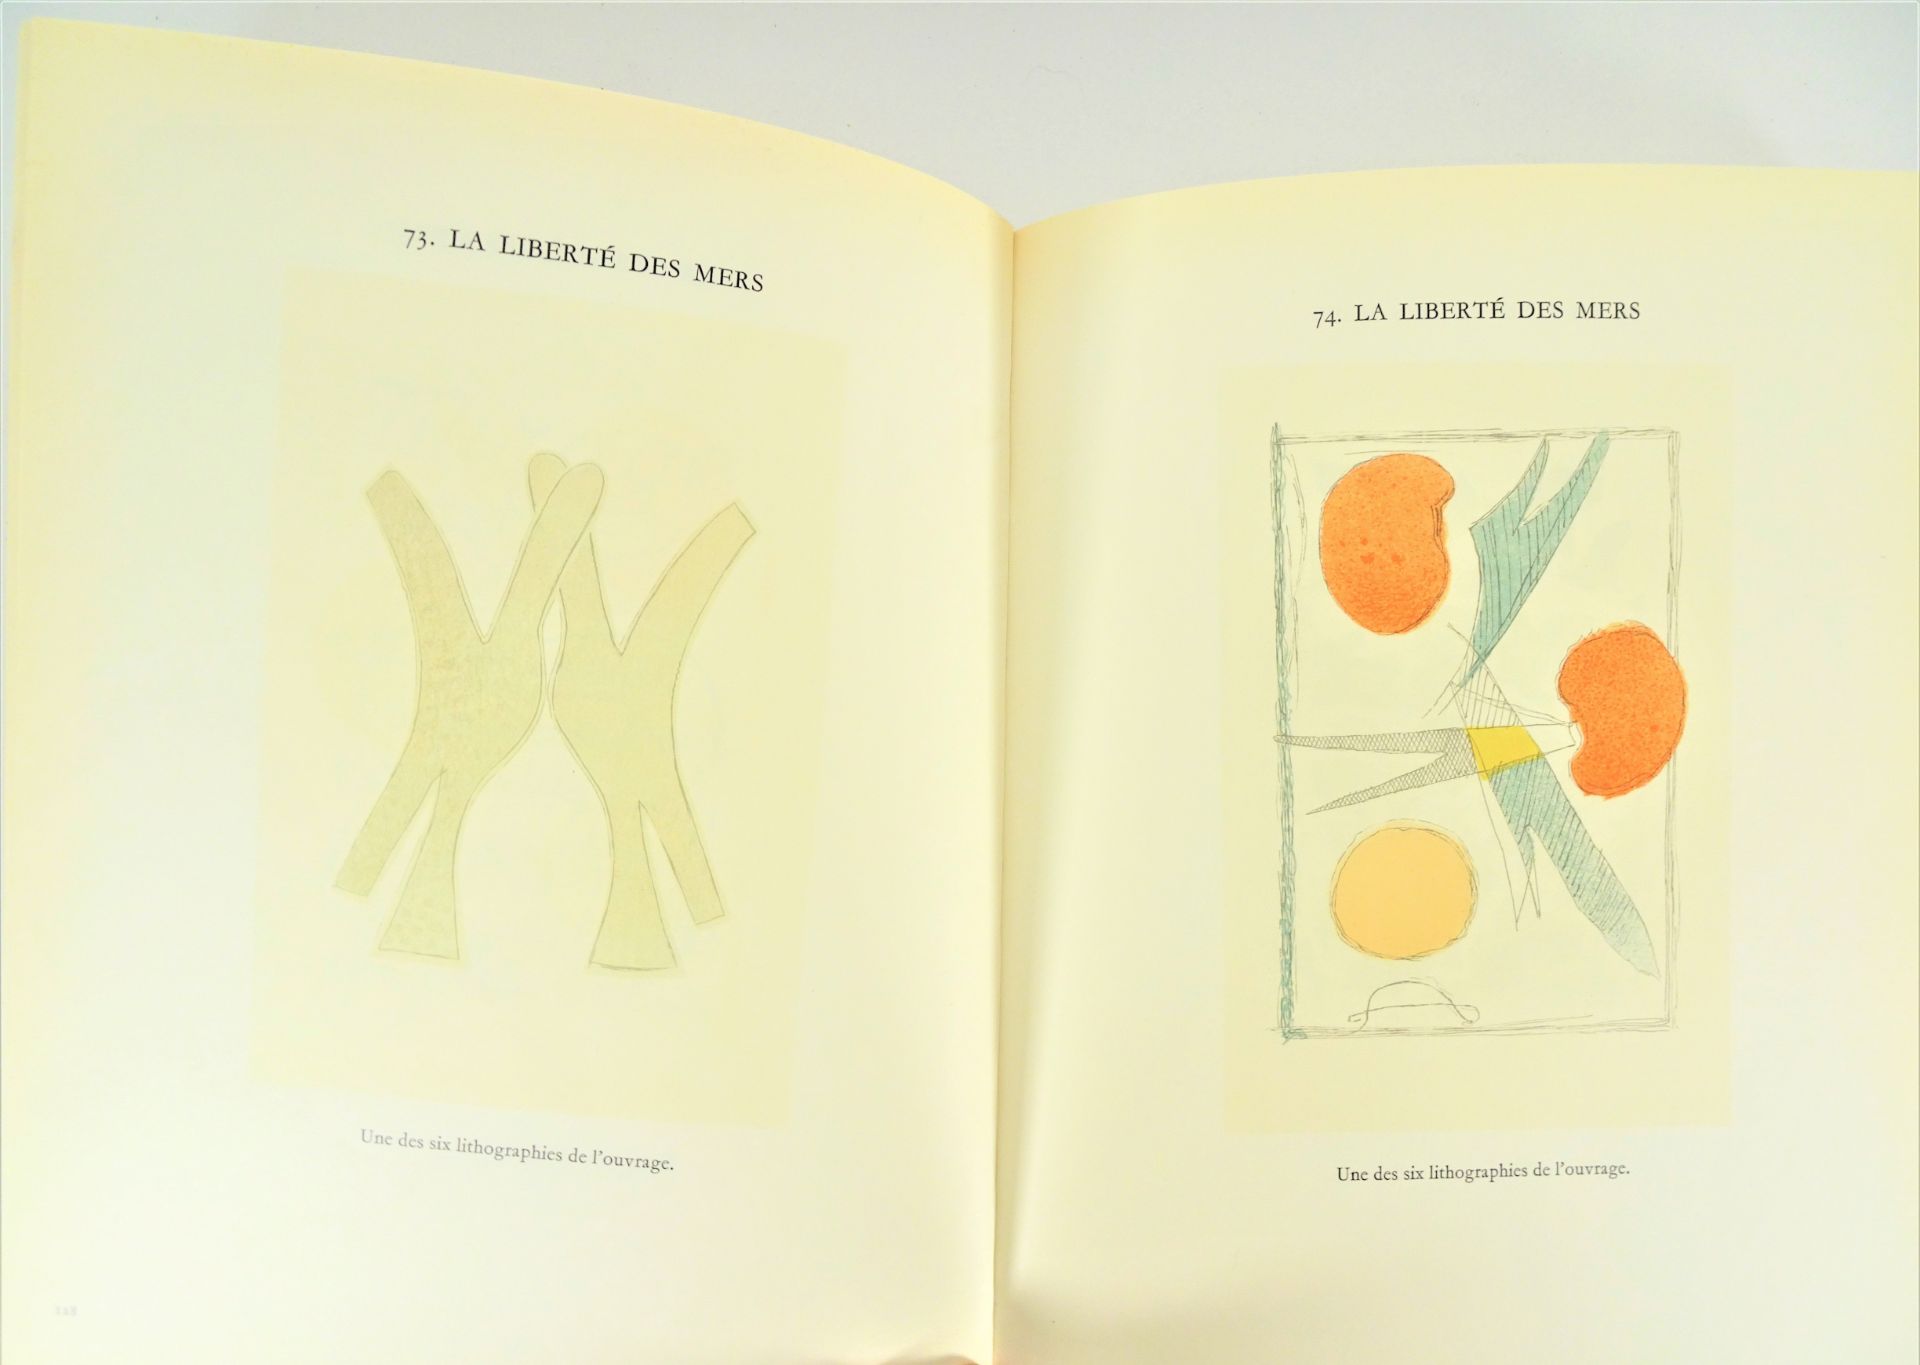 |Art| George Braque, "Braque lithographe", 1963, édition limitée. Fernand Mourlot, catalogue - Image 7 of 12